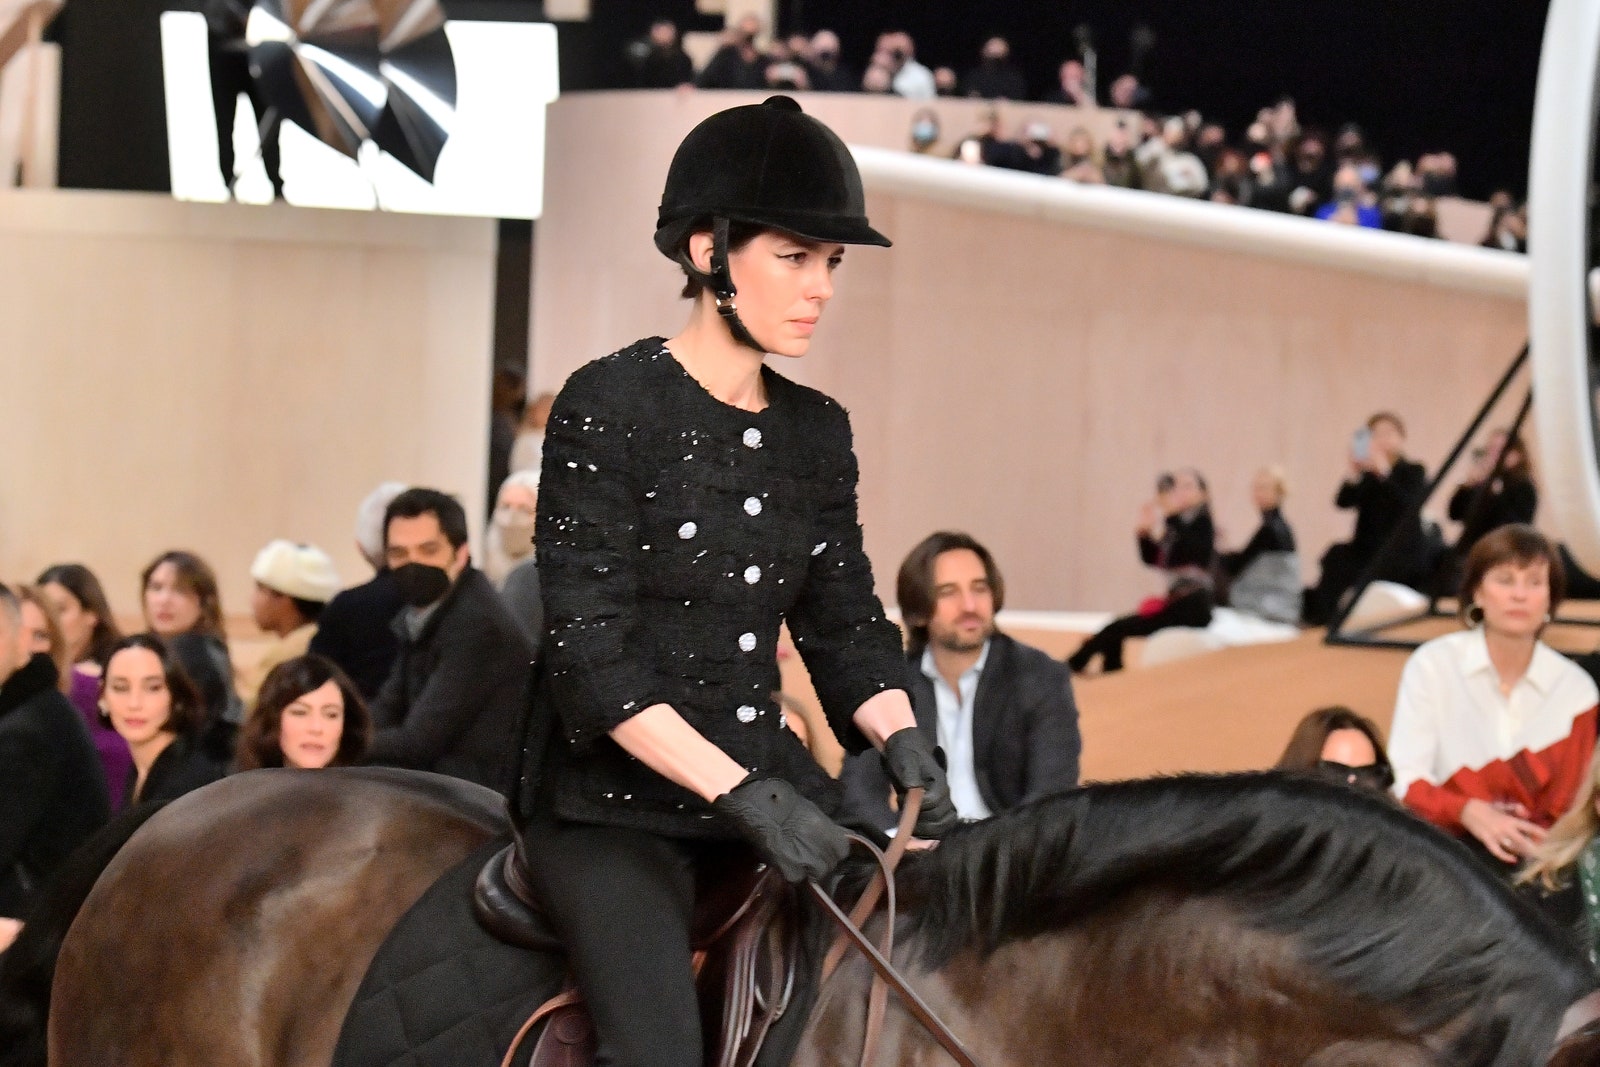 Внучка Грейс Келли Шарлотта Казираги открыла кутюрный показ Chanel выехав на подиум на лошади